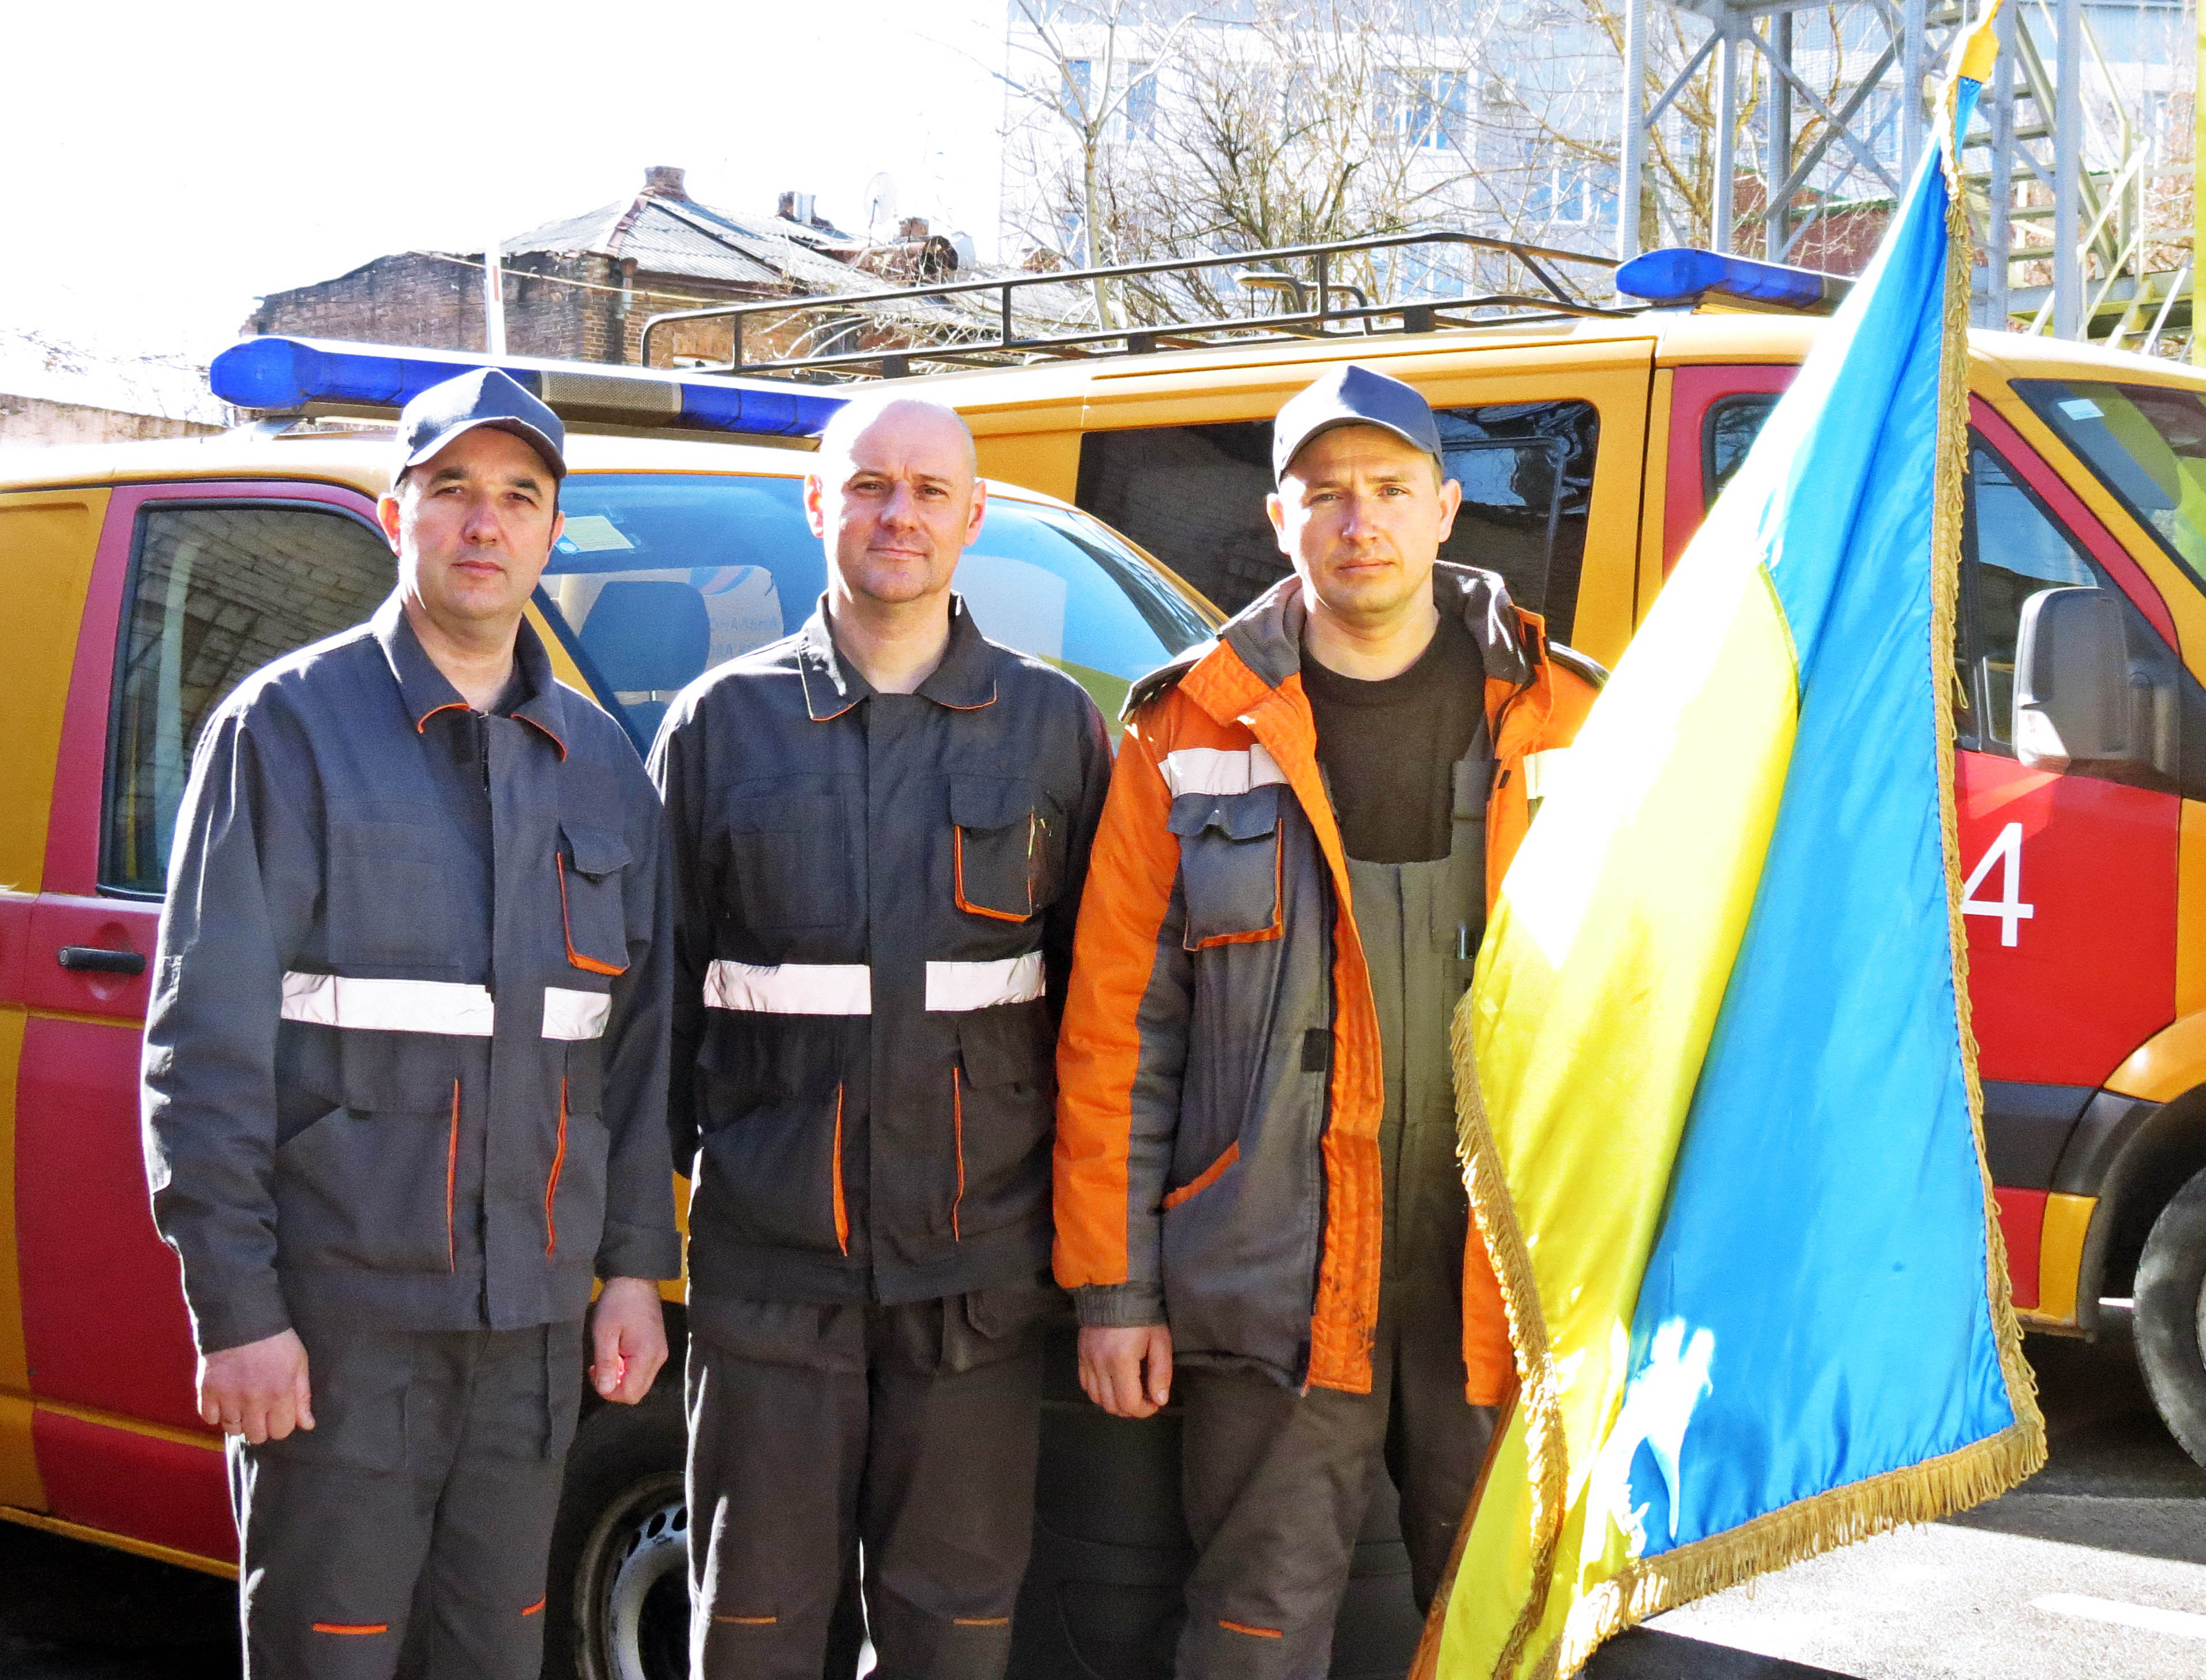 З початку року аварійна служба «Дніпрогазу» опрацювала більше 4,7 тисяч викликів від споживачів газу